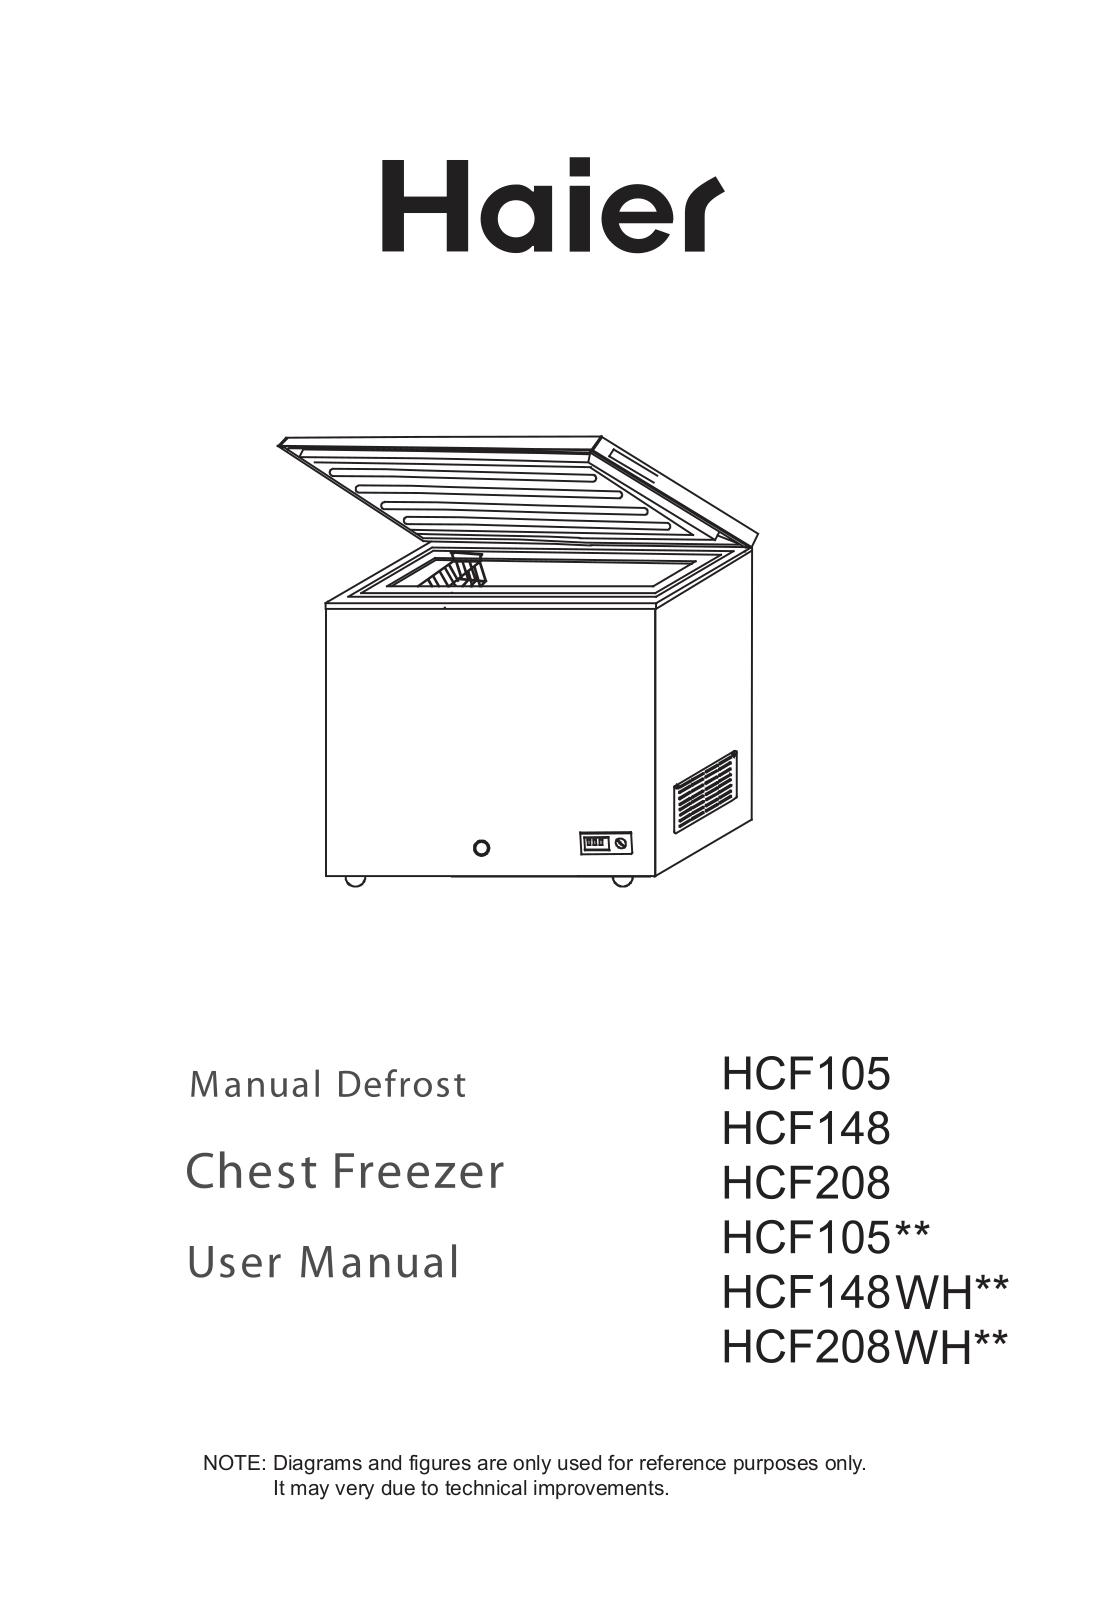 Haier HCF148-2 User Manual